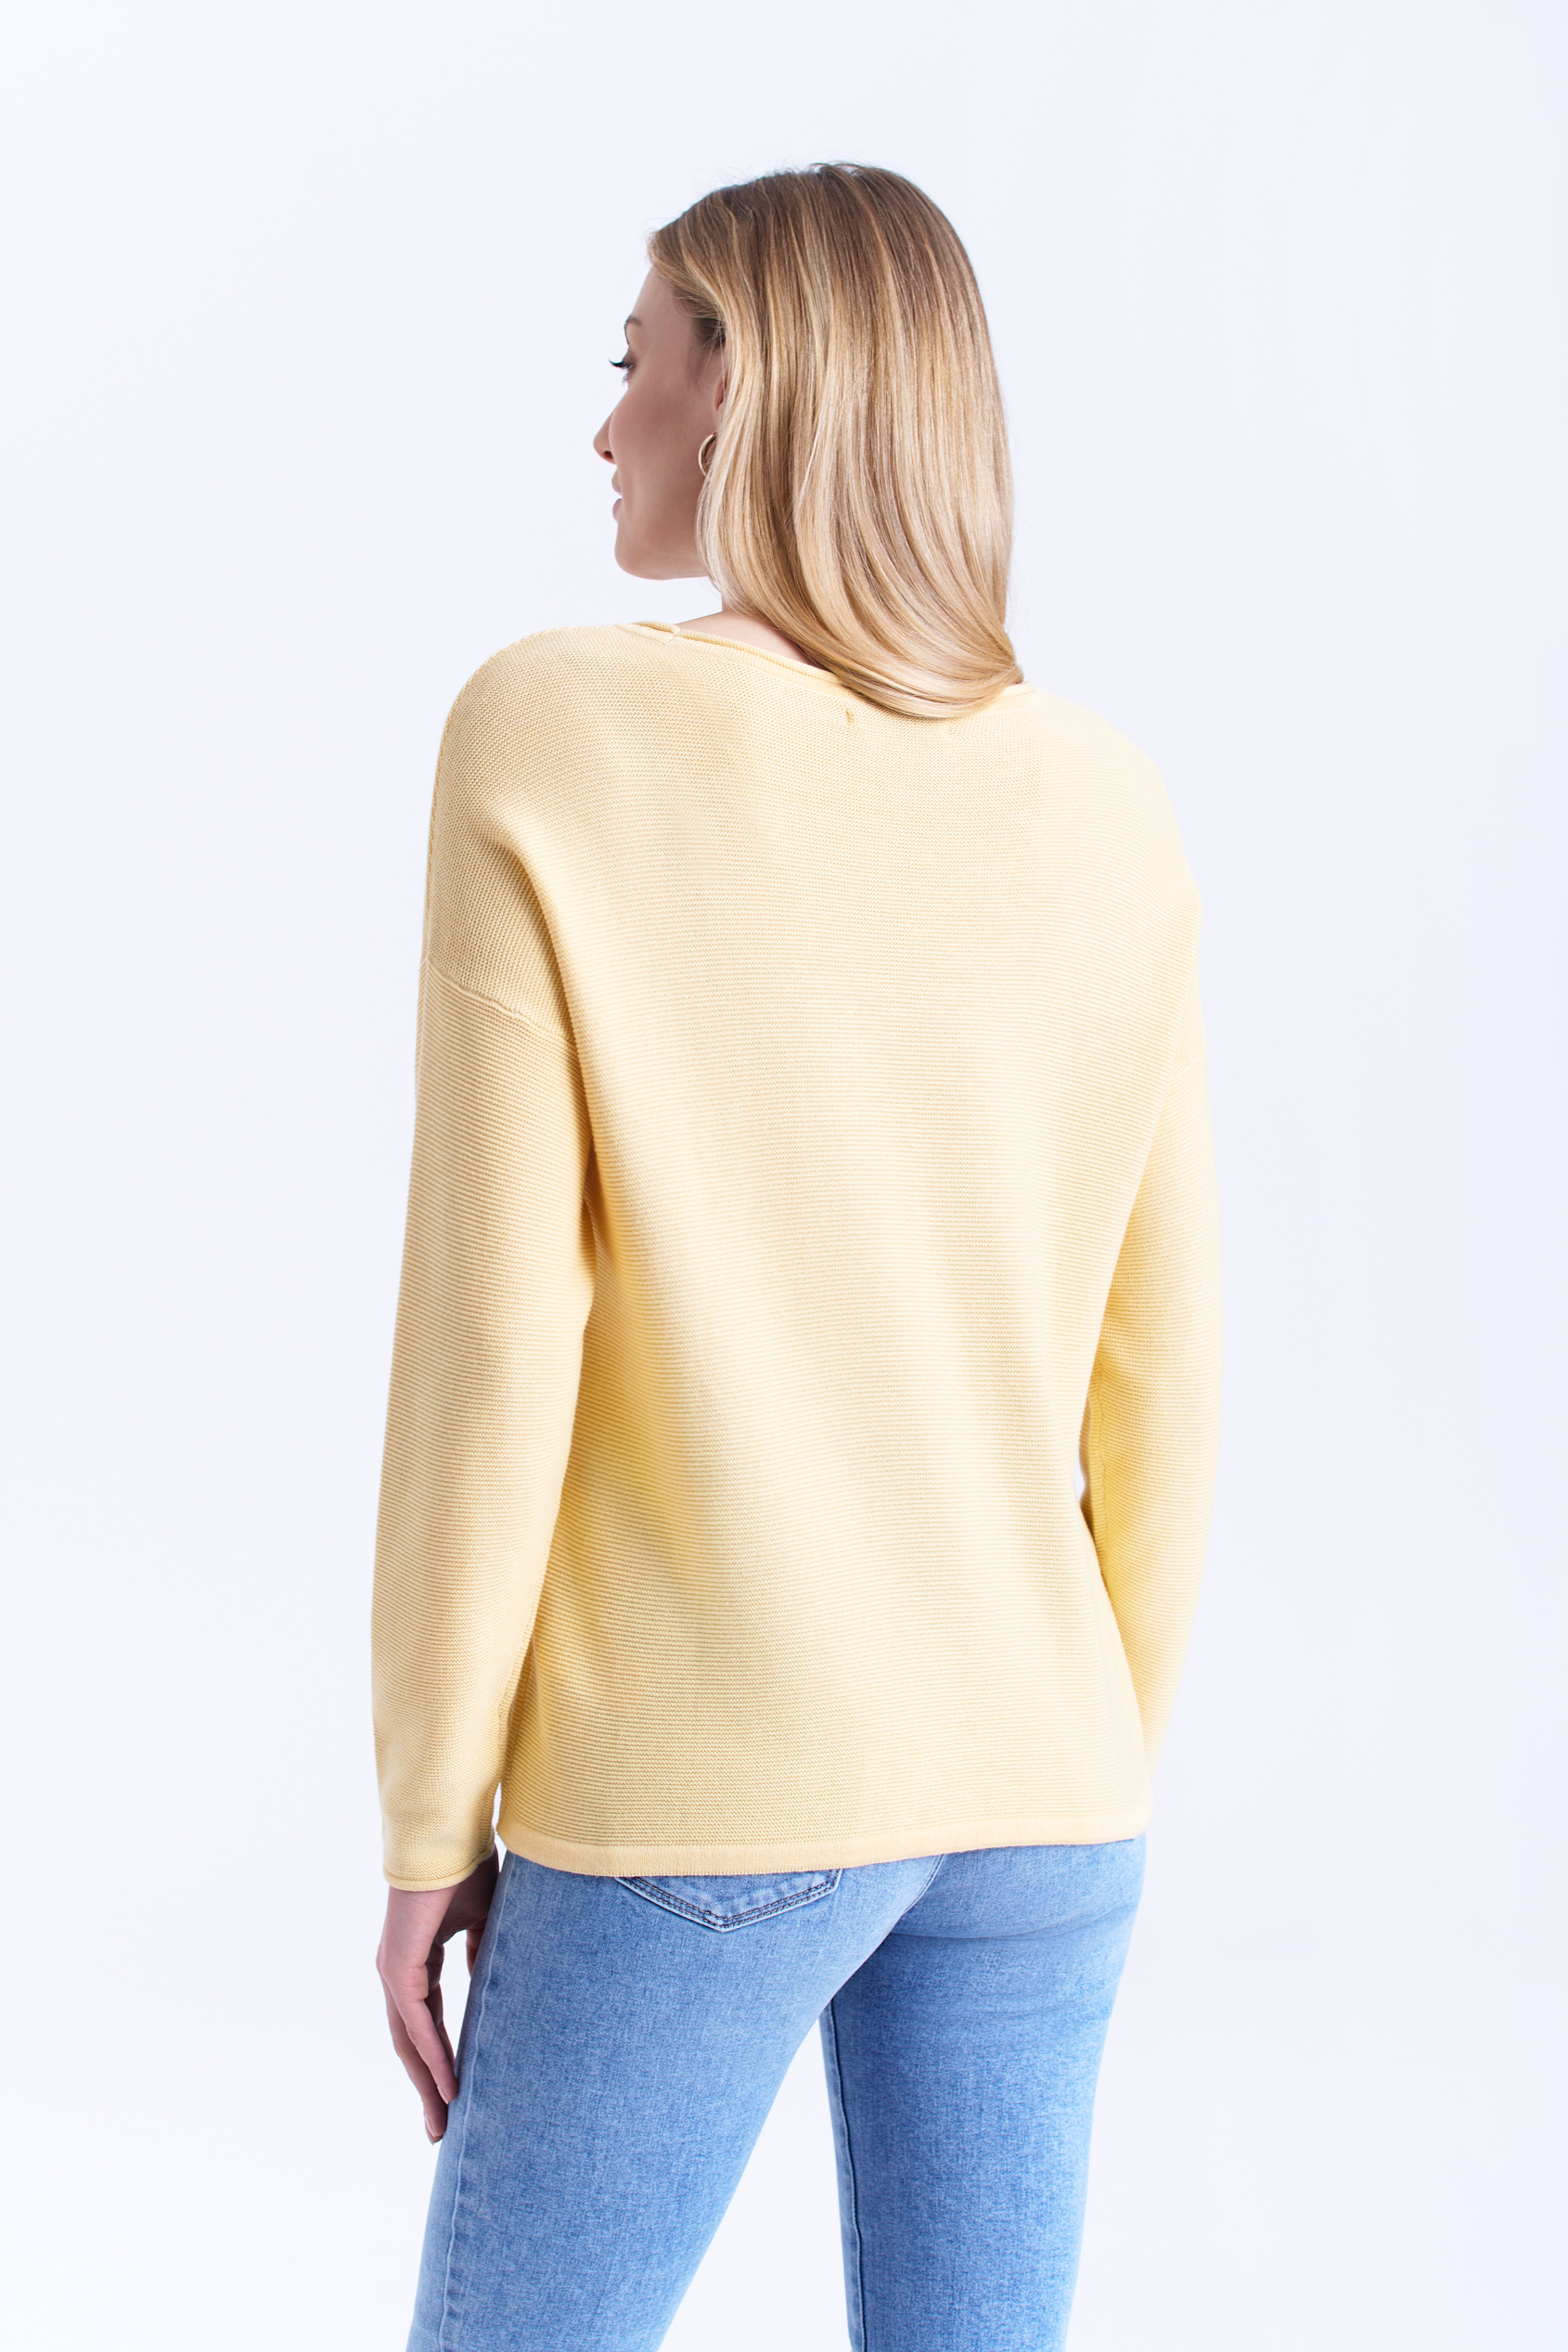 Żółty sweter z wiązaniem